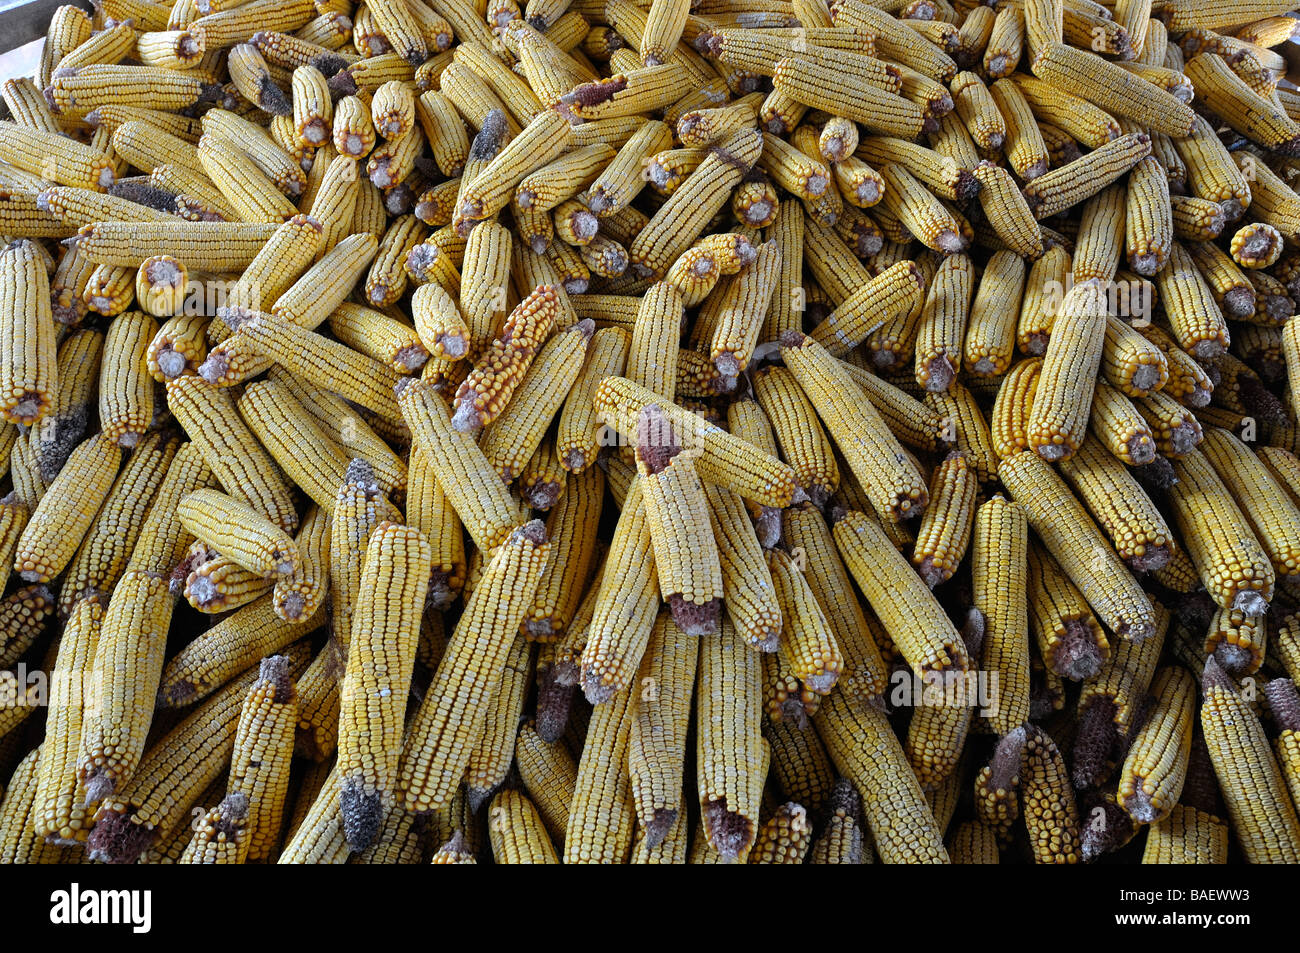 Storage di mais nel villaggio di Vojka nella Vojvodina Serbia. Foto Stock